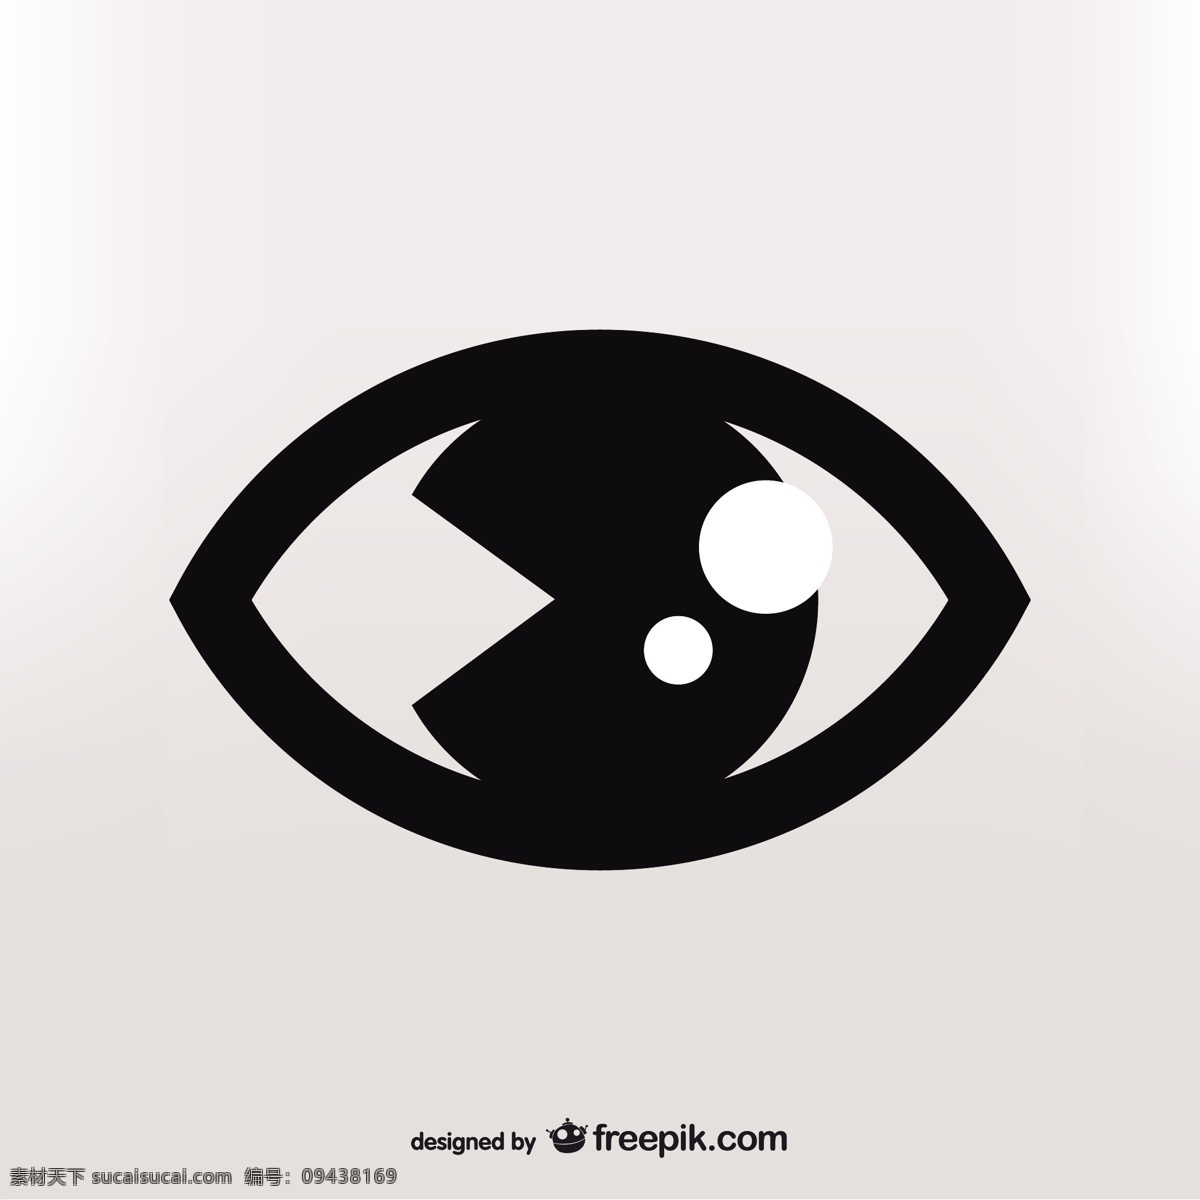 黑眼睛的轮廓 标识 图标 健康 标志设计 图形 眼睛 人 平面设计 医学 象形文字 设计元素 符号 视觉元素 注意 看来 解剖 白色